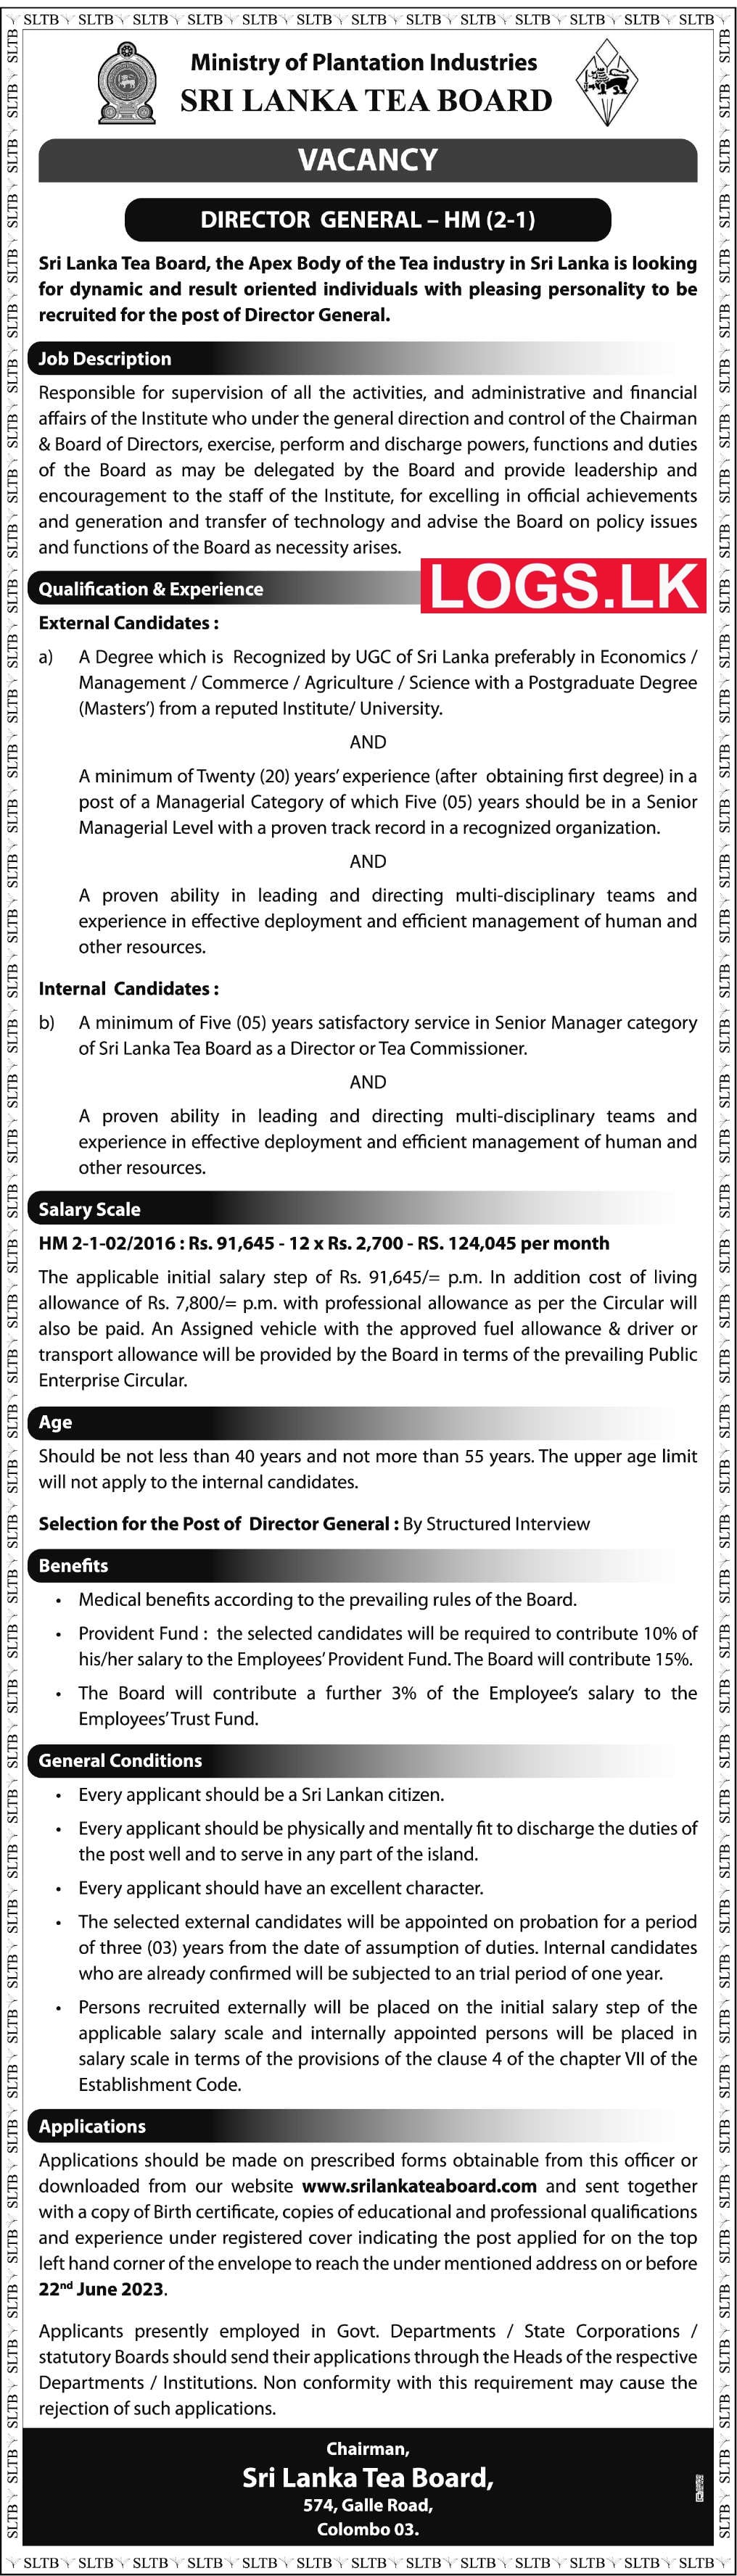 Director General - Sri Lanka Tea Board Job Vacancies 2023 Application Form, Details Download